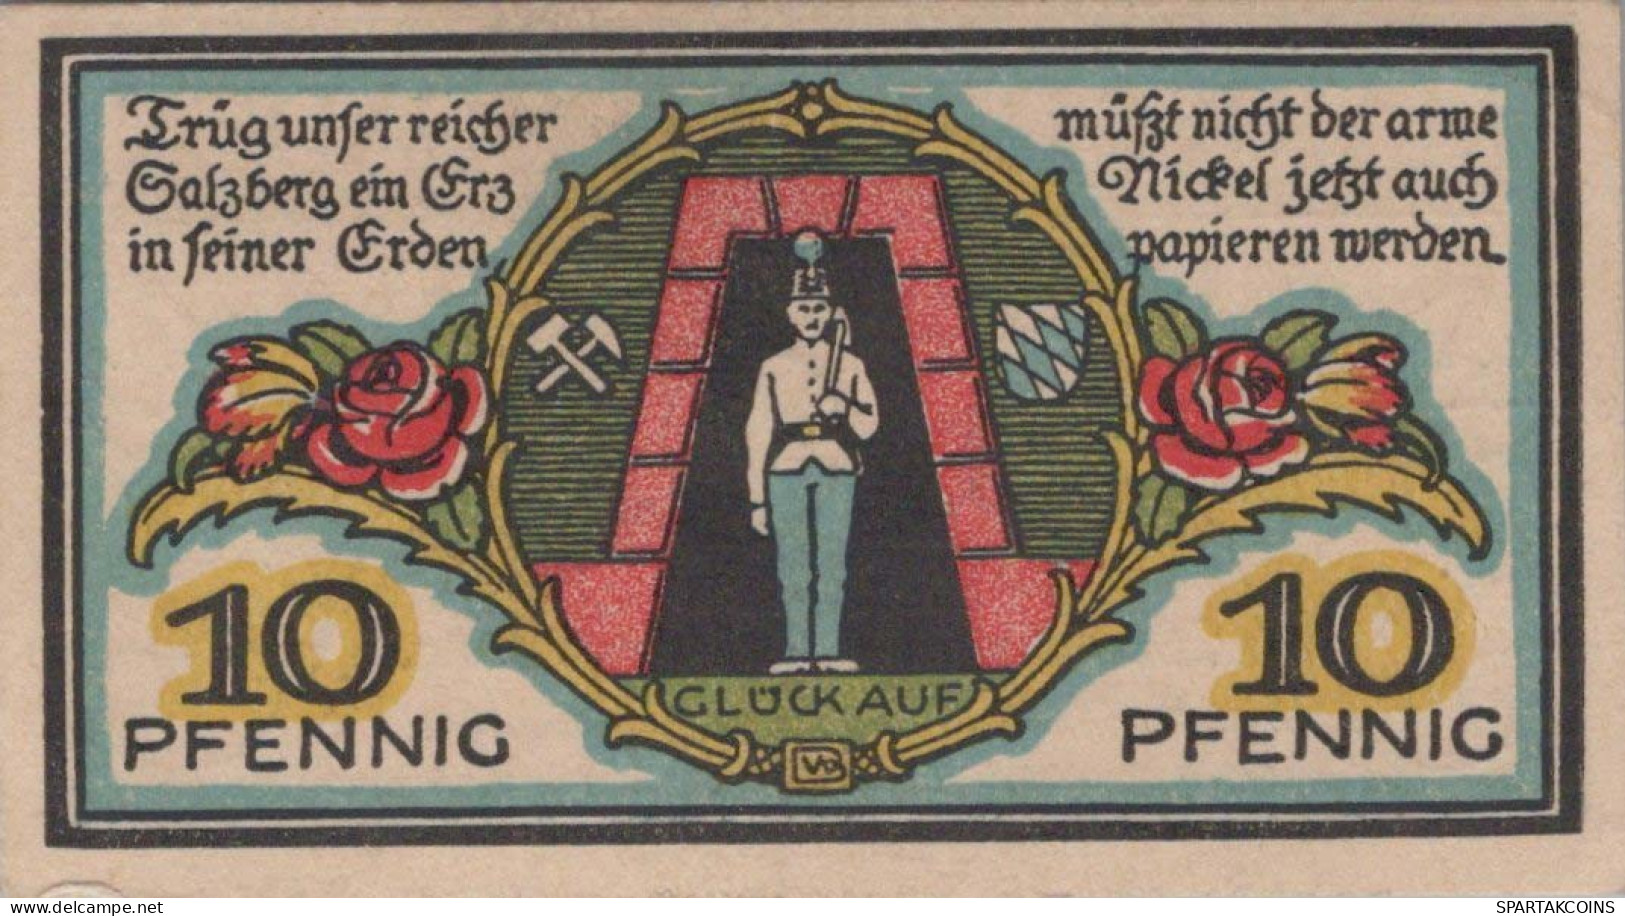 10 PFENNIG 1920 Stadt BERCHTESGADEN Bavaria DEUTSCHLAND Notgeld Banknote #PG250 - [11] Local Banknote Issues